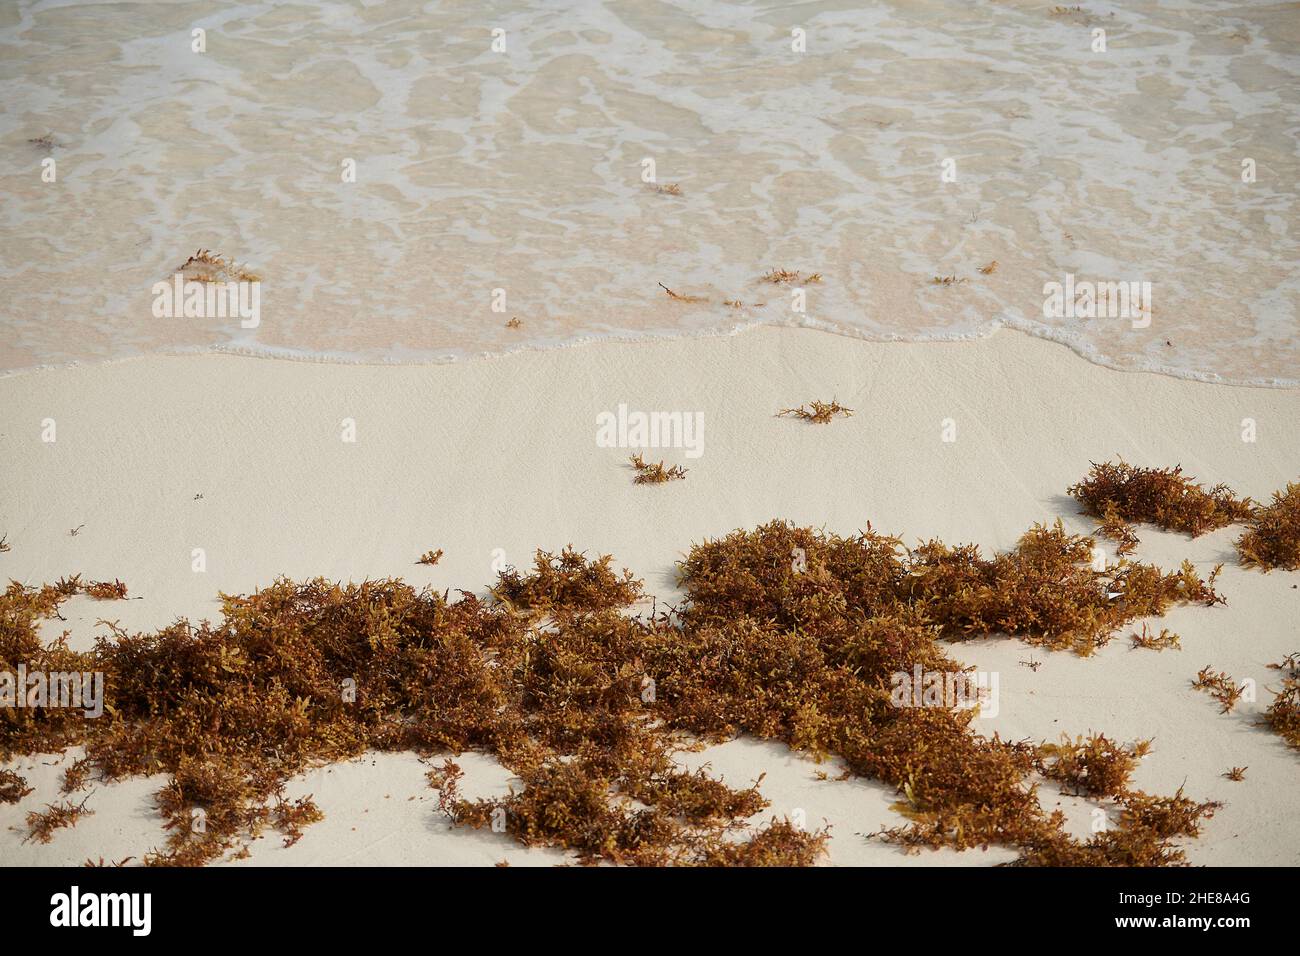 Am Strand auf der Isla Holbox, Mexiko, wurden Algen aufgespült Stockfoto